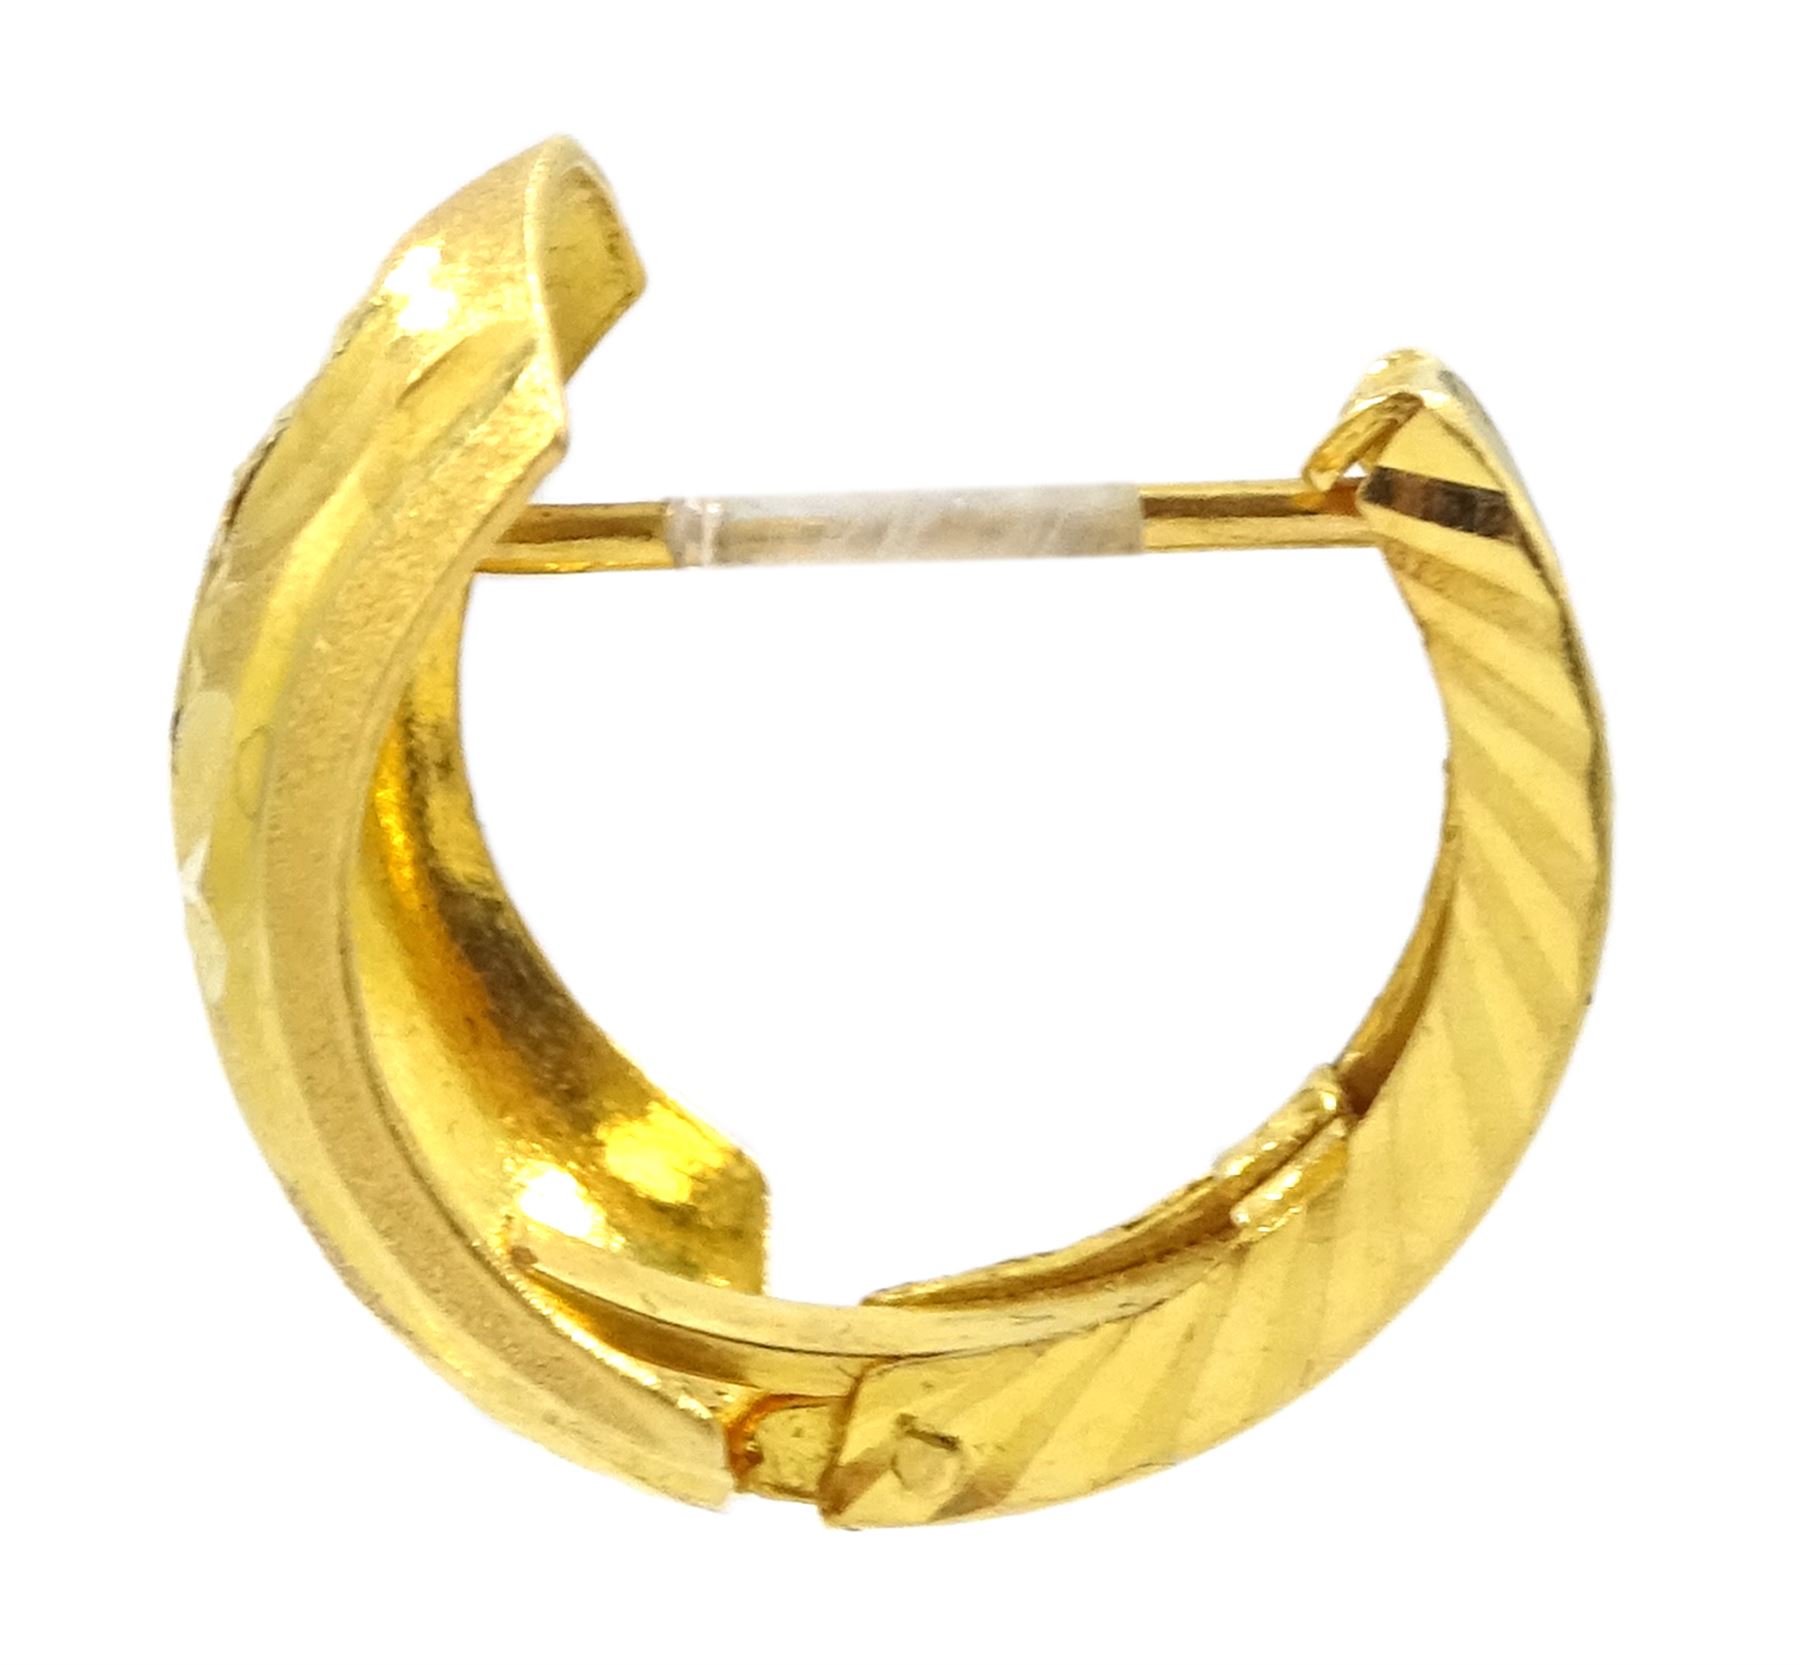 Pair of 22ct gold hoop earrings - Image 2 of 2